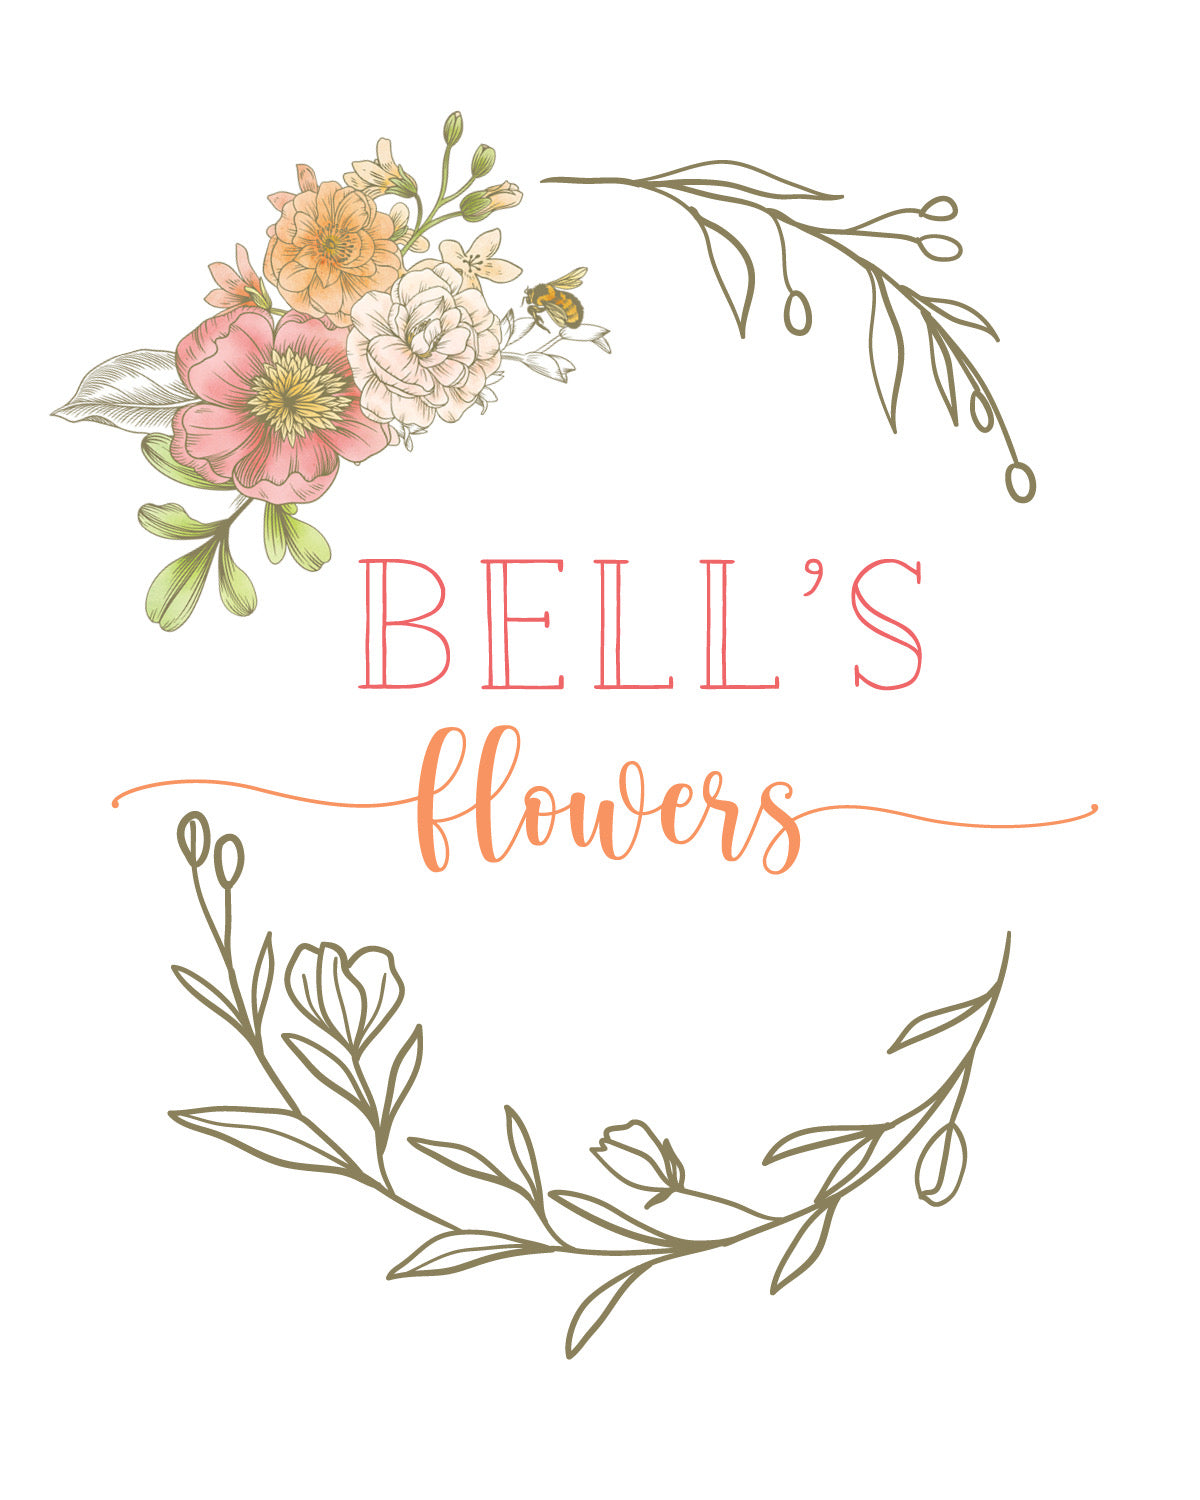 Bell's Flower logo for gift card